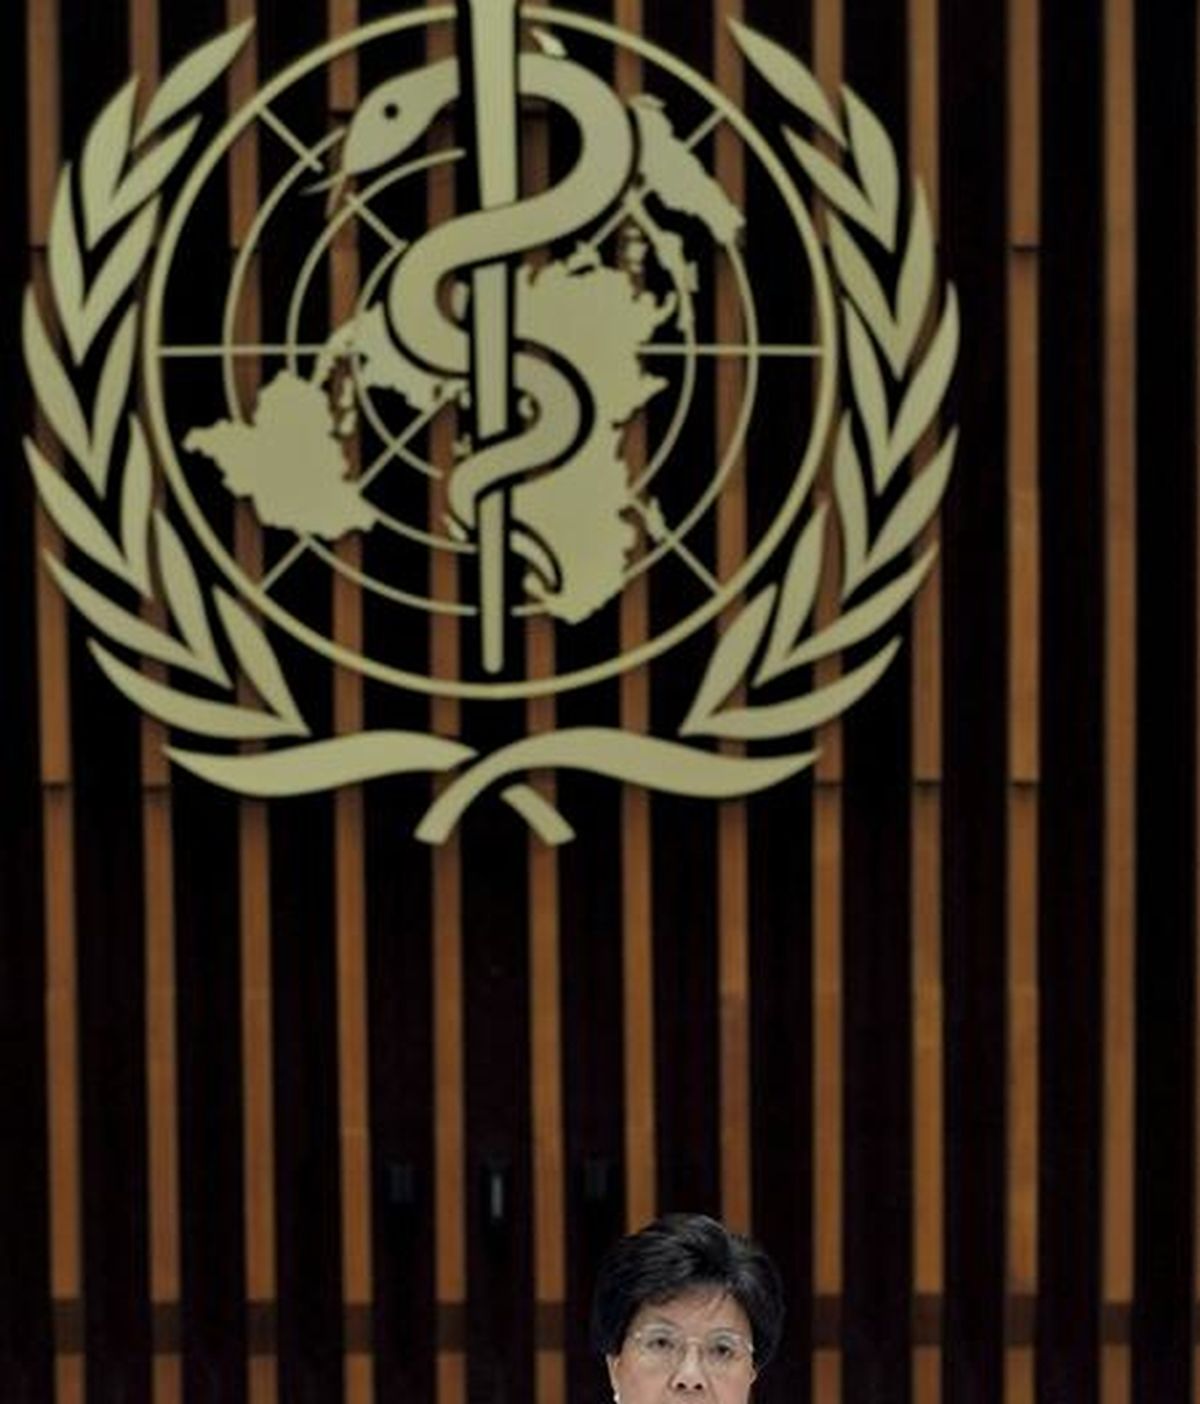 La directora general de la Organización Mundial de la Salud (OMS), Margaret Chan, fotografiada durante la rueda de prensa celebrada en la sede de este organismo en Ginebra, Suiza hoy jueves 11 de junio de 2009.La Organización Mundial de la Salud elevó hoy a 6 (máximo en la escala) el nivel de alerta por la gripe A, aunque precisó que se trata de "una pandemia moderada" a nivel global. EFE